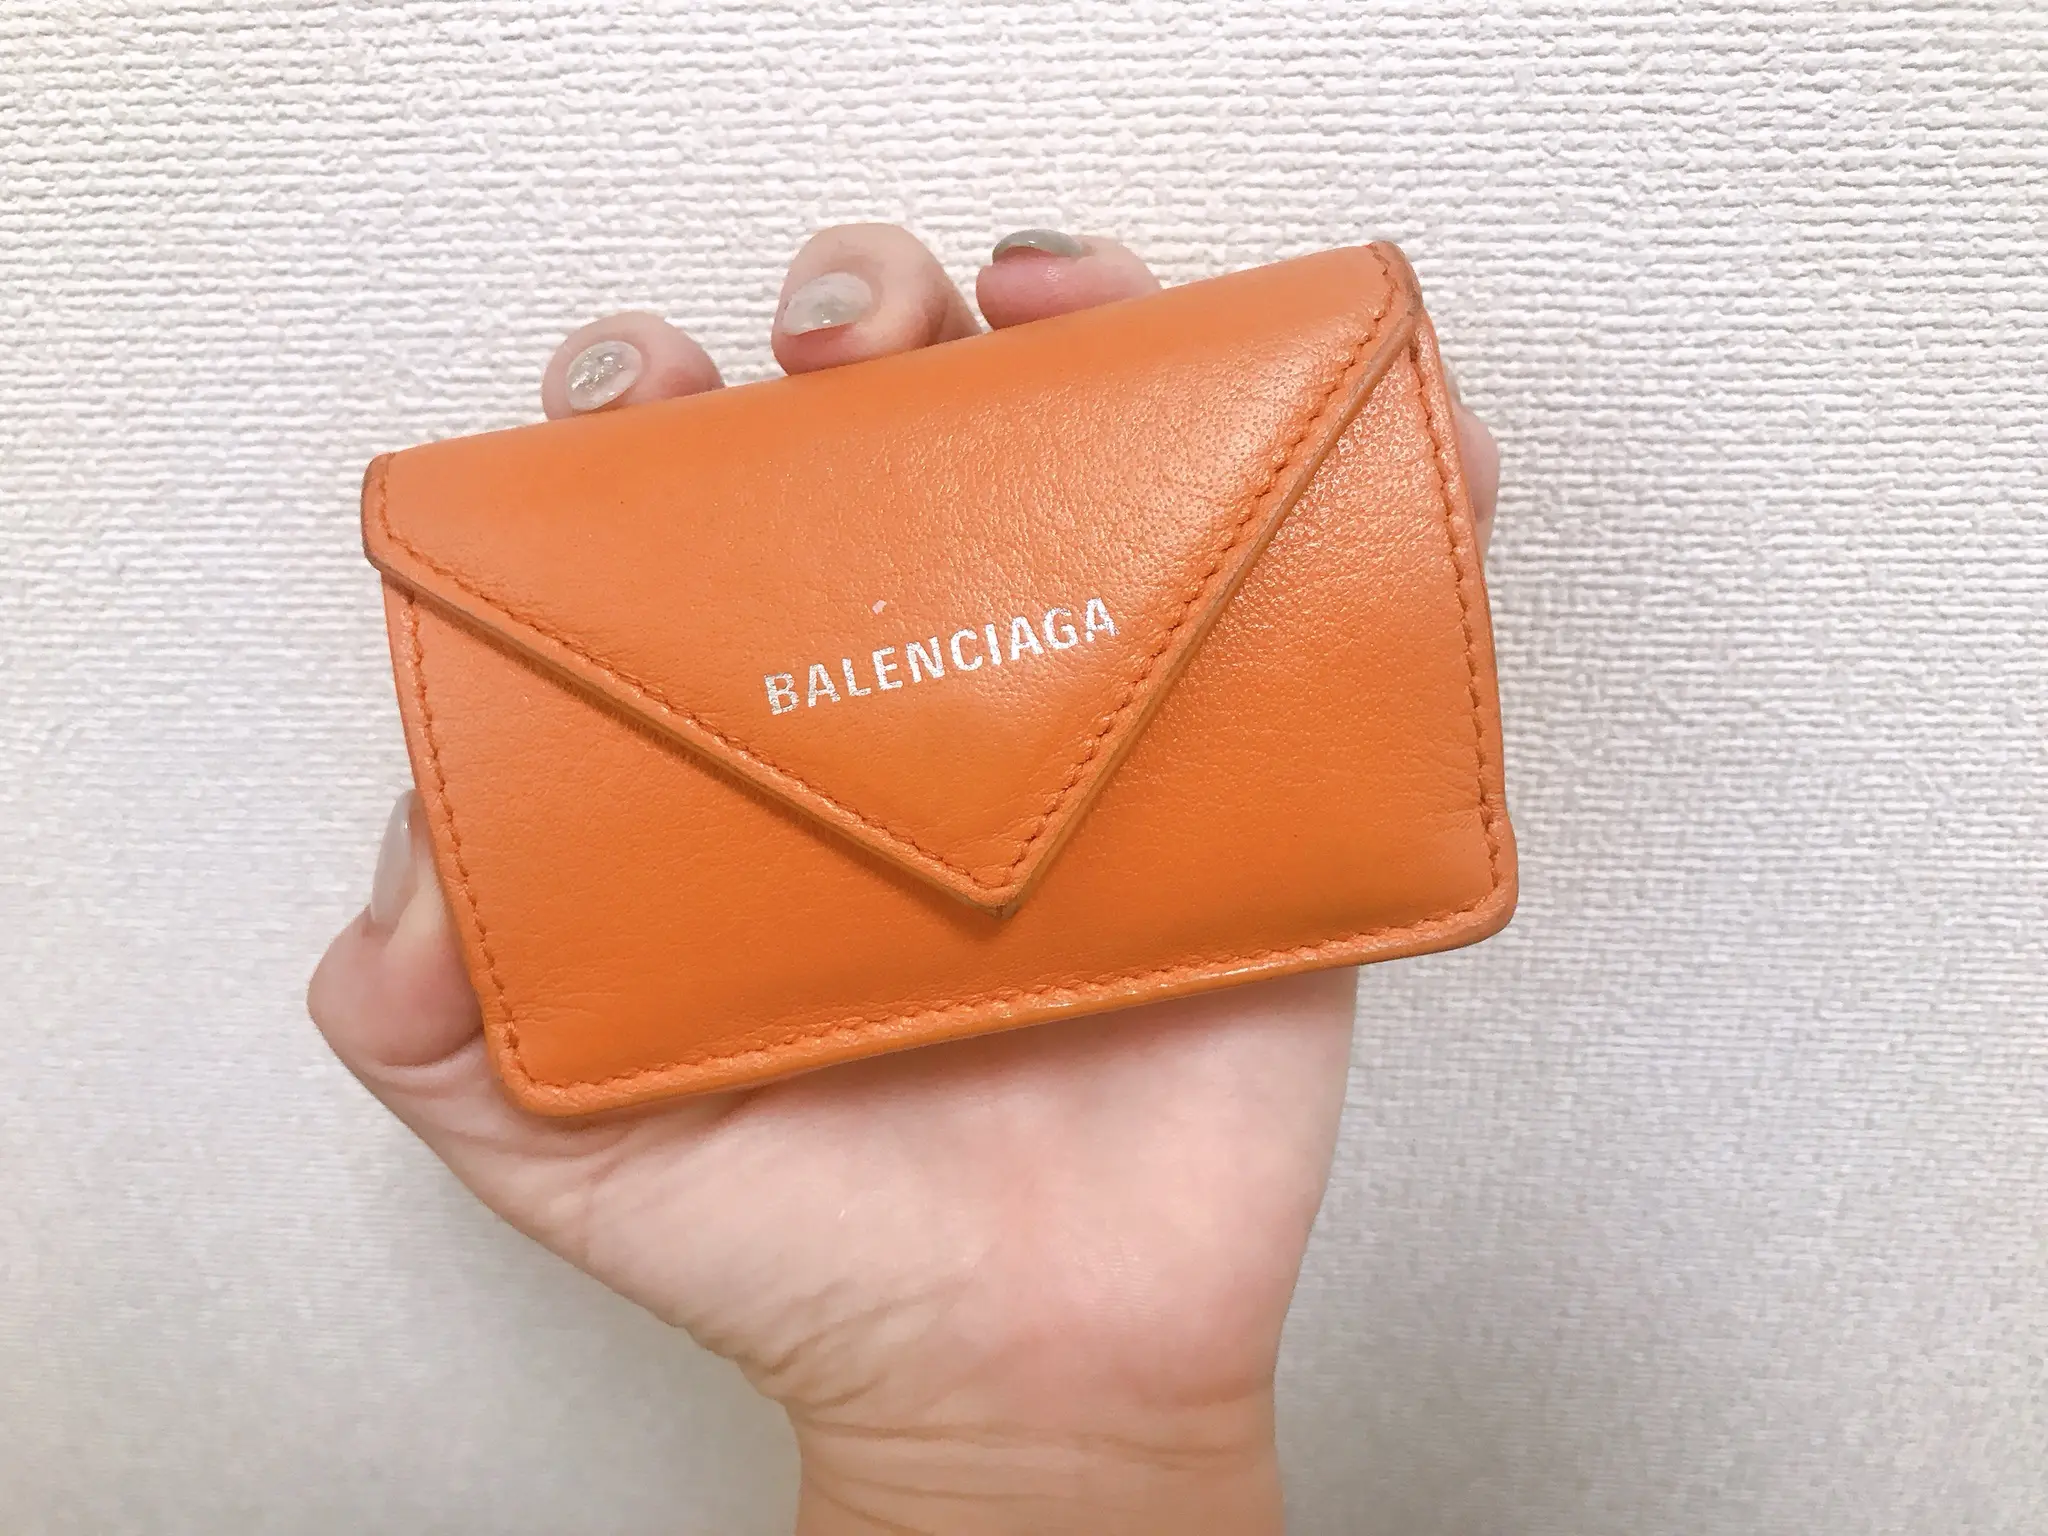 代女子の愛用財布 手に収まるサイズ感 でも大容量なバレンシアガのミニ財布 Moreインフルエンサーズブログ Daily More